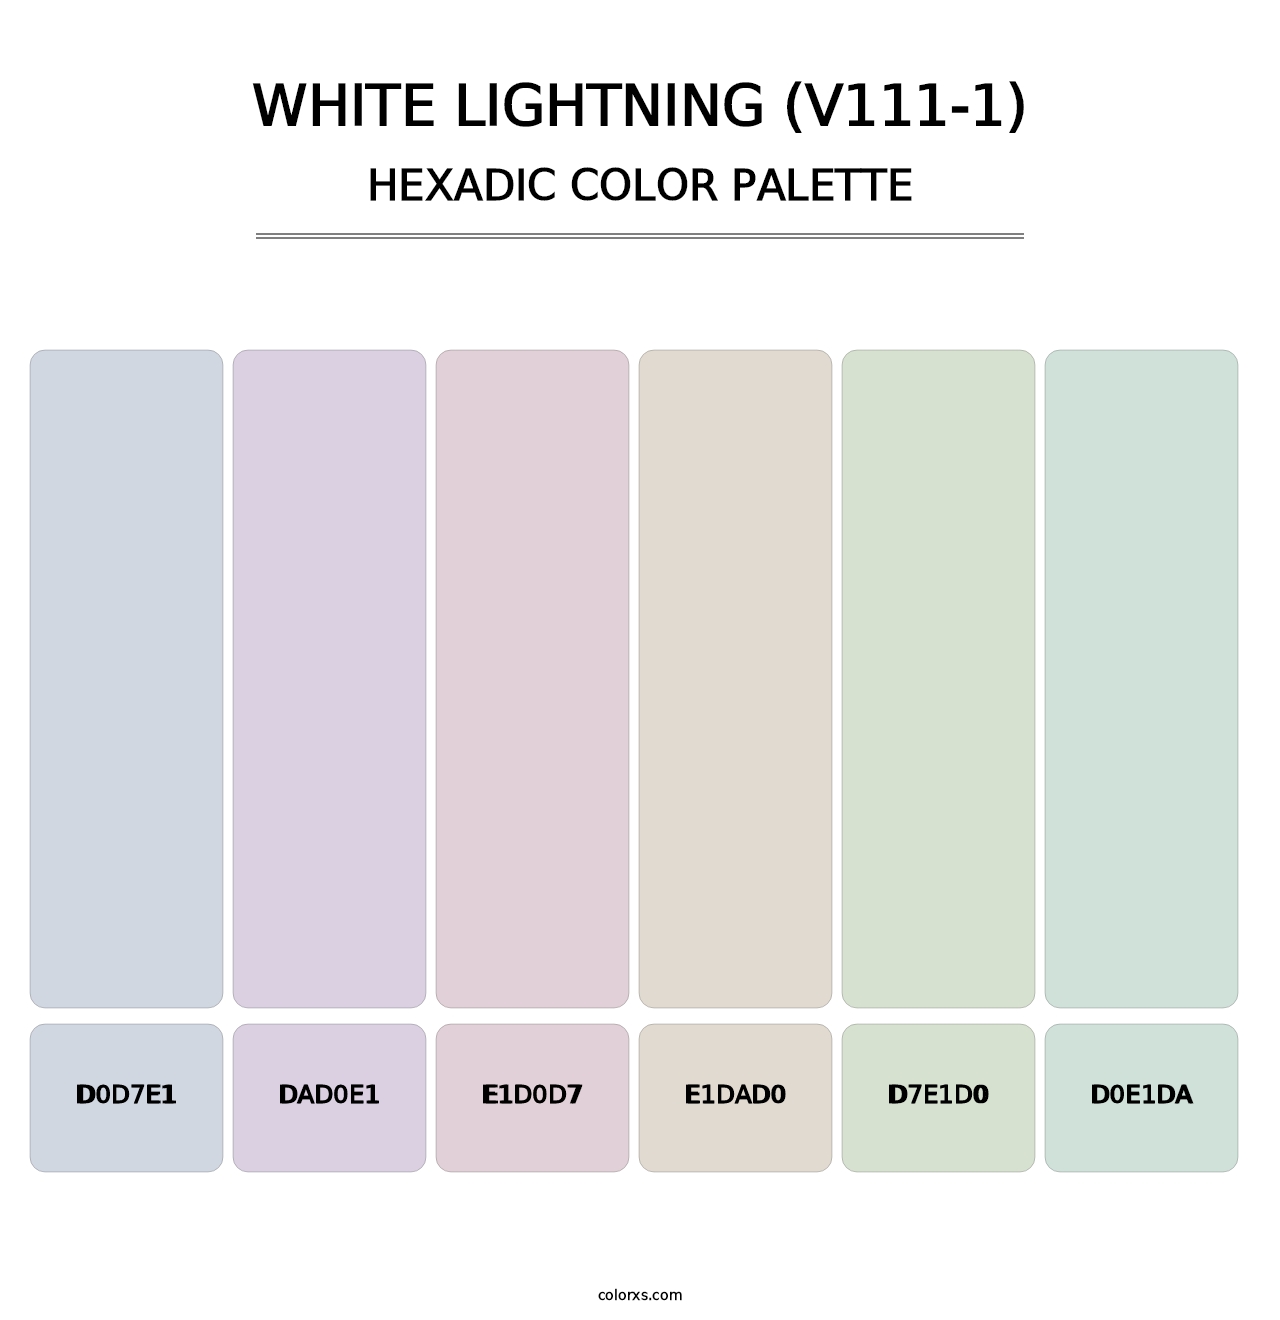 White Lightning (V111-1) - Hexadic Color Palette